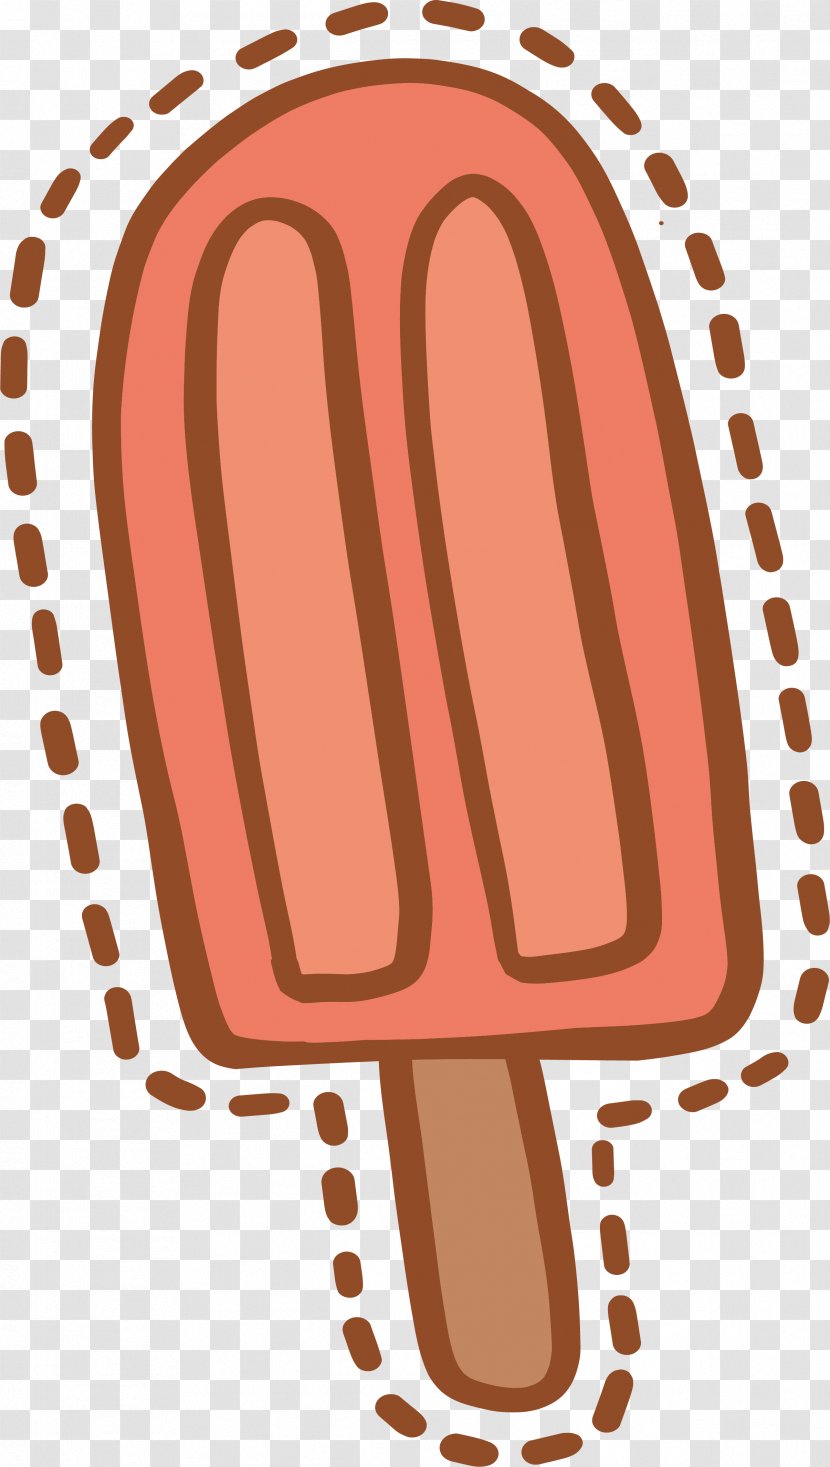 Ice Cream Pop Illustration - Design Transparent PNG